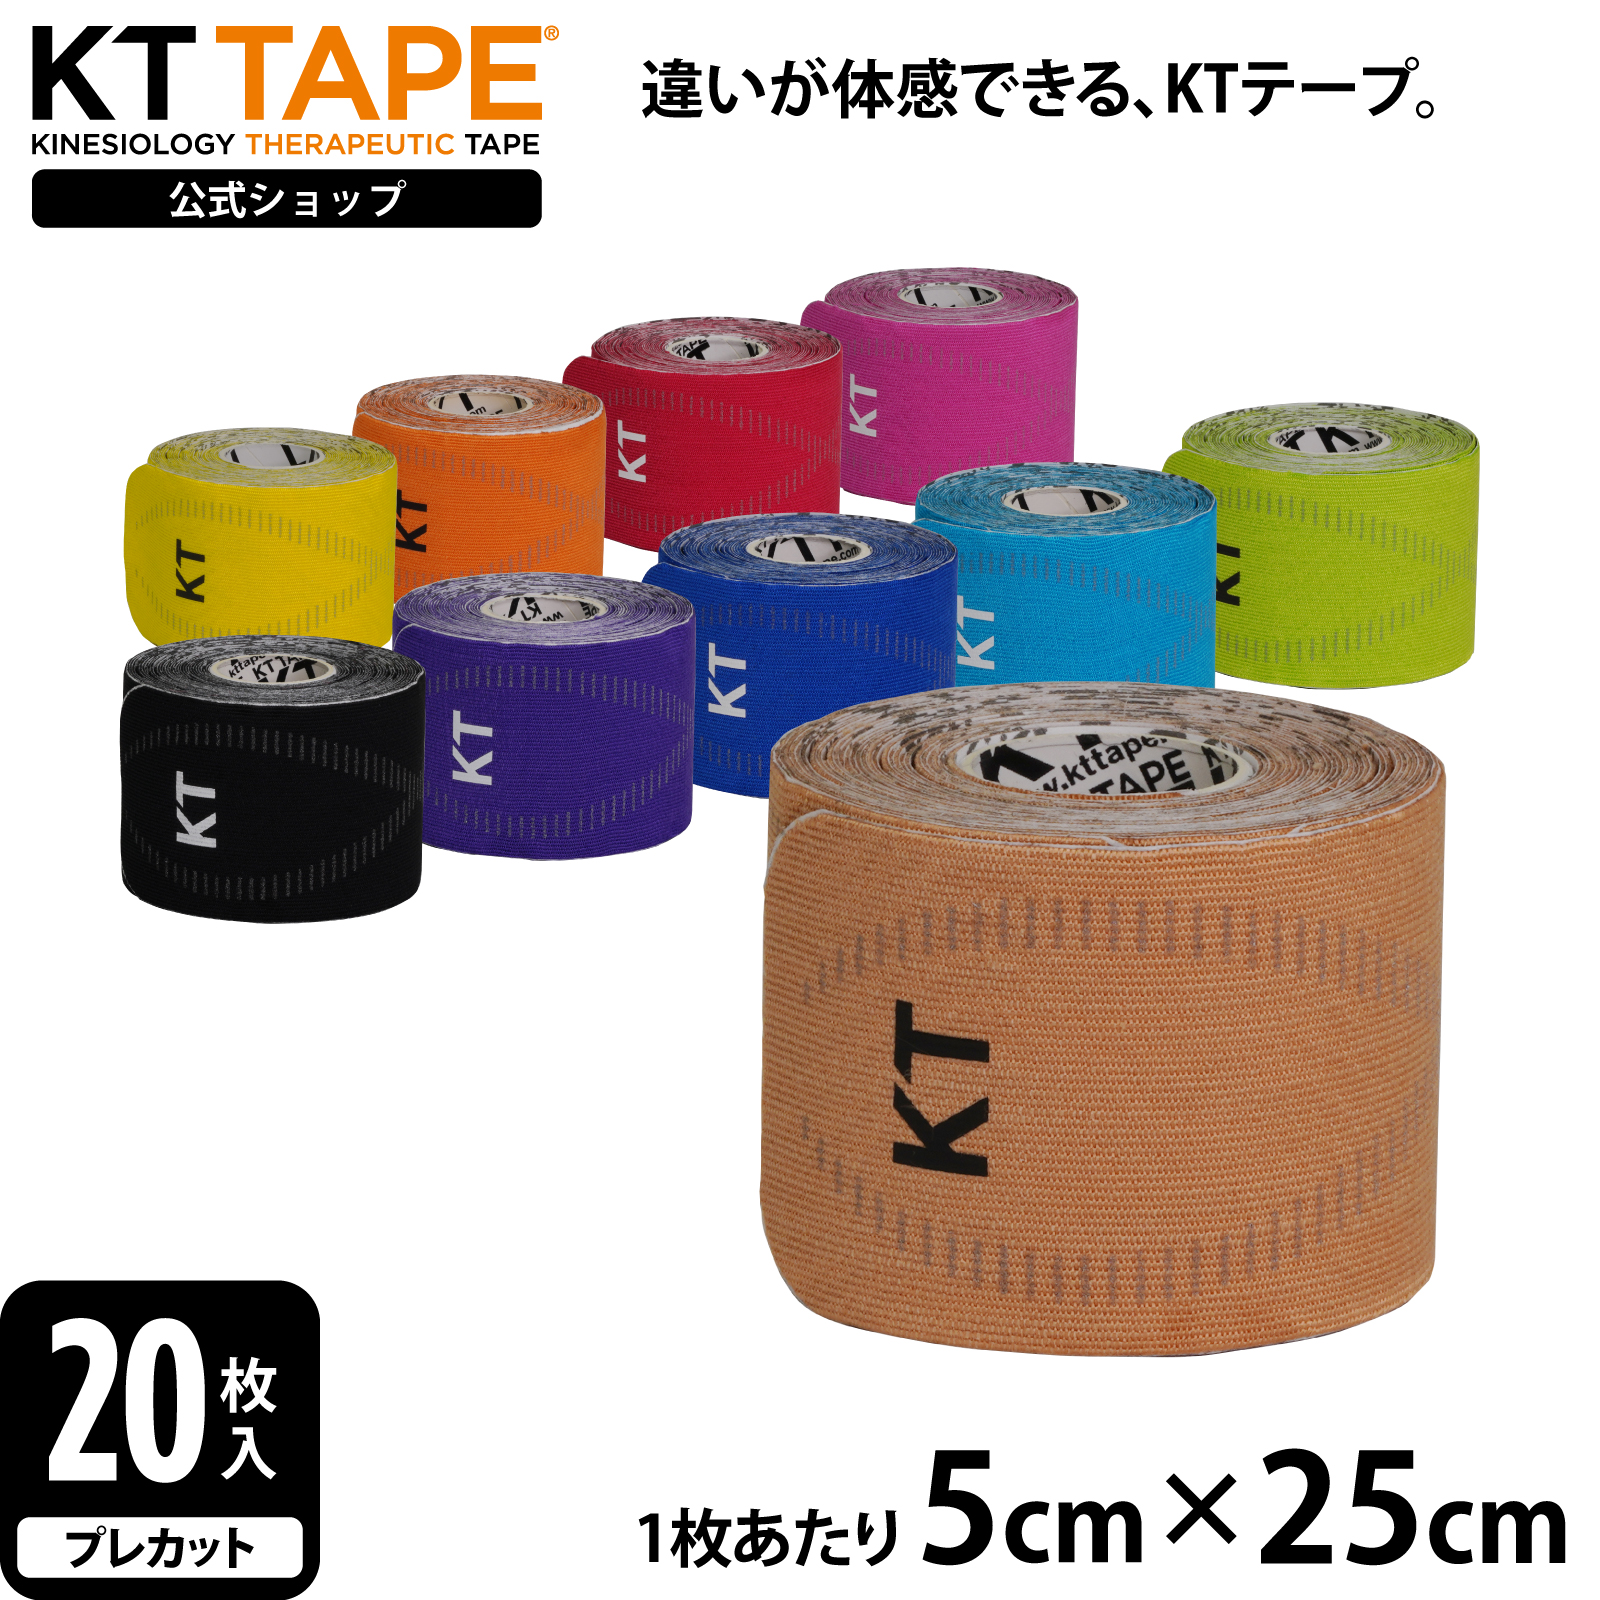 KT TAPE ケイティテープ PRO20 KTPR20 激安通販販売 KTテープ キネシオロジーテープ テーピング 合成繊維 粘着 伸びる しなやか サポート 力 長持ち スポーツ 買収 開催 ブラックフライデー WINTER 11 送料無料 18～ SALE クーポン有 しわになりにくい 期間限定 ゴルフ 耐久性 ランニング